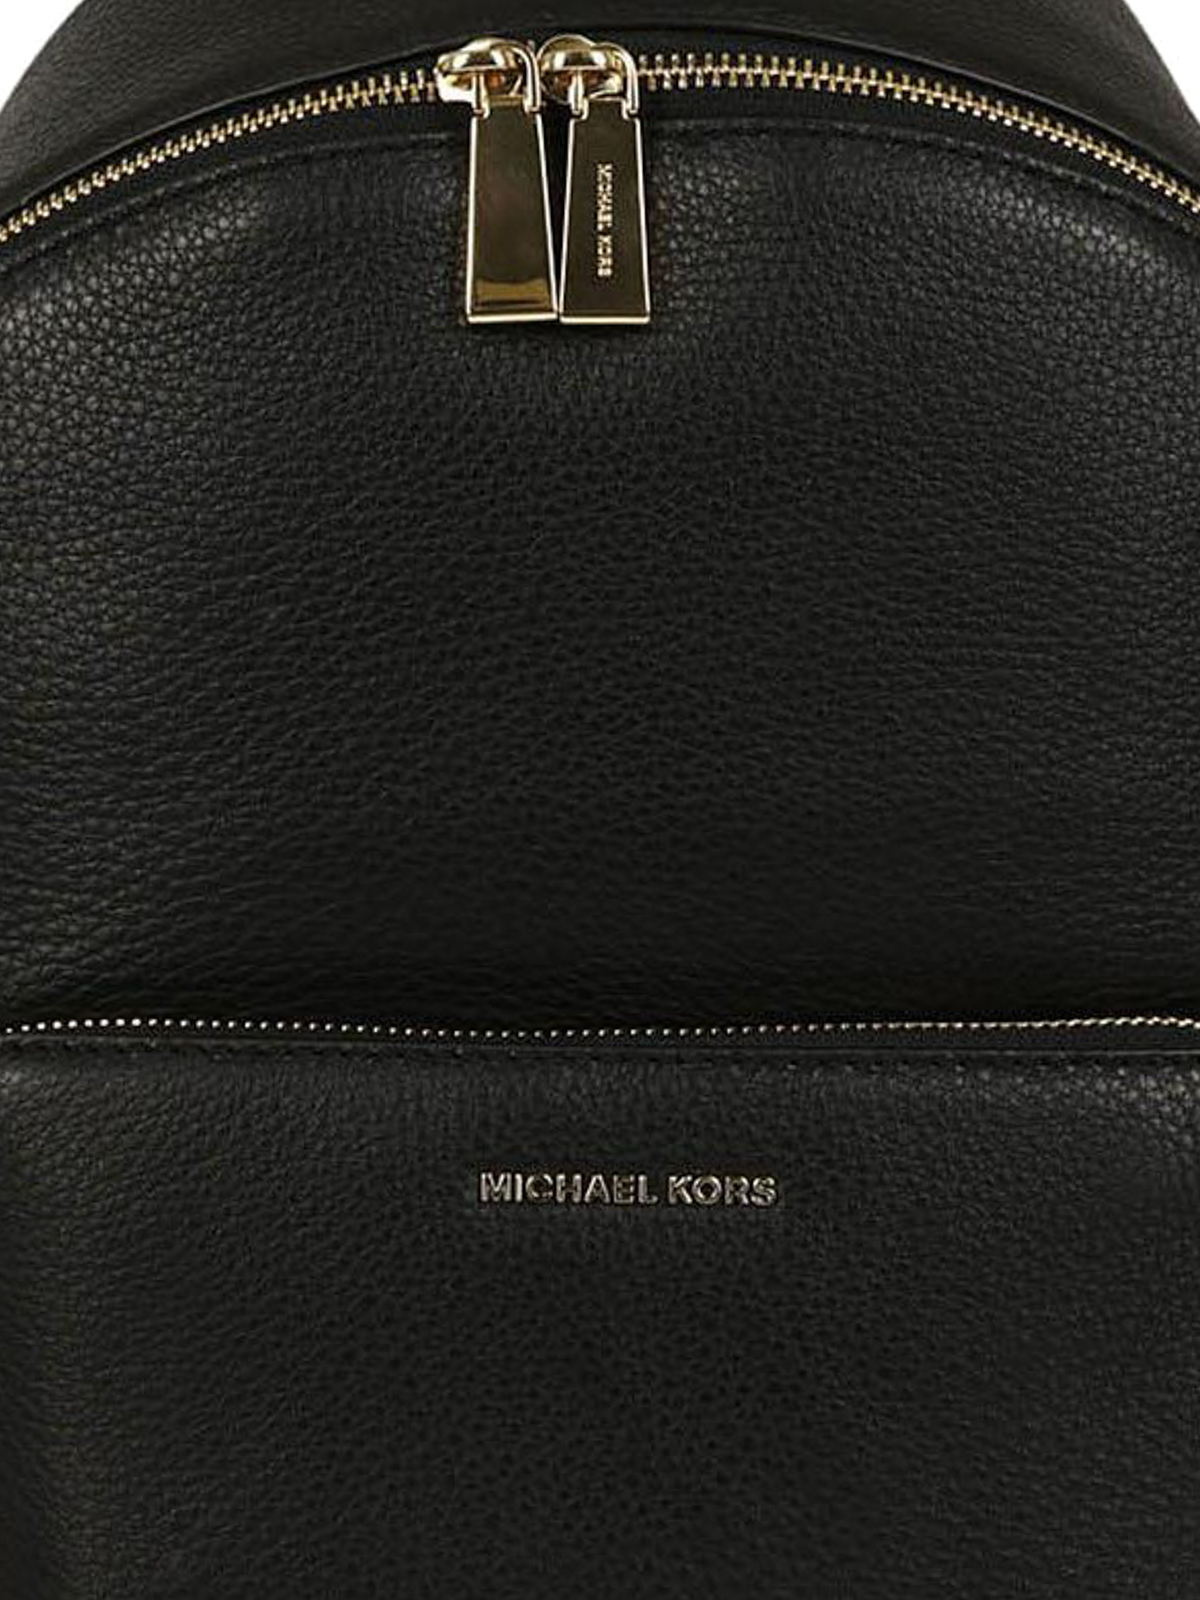 Michael Kors Full-Grain Leather Backpack